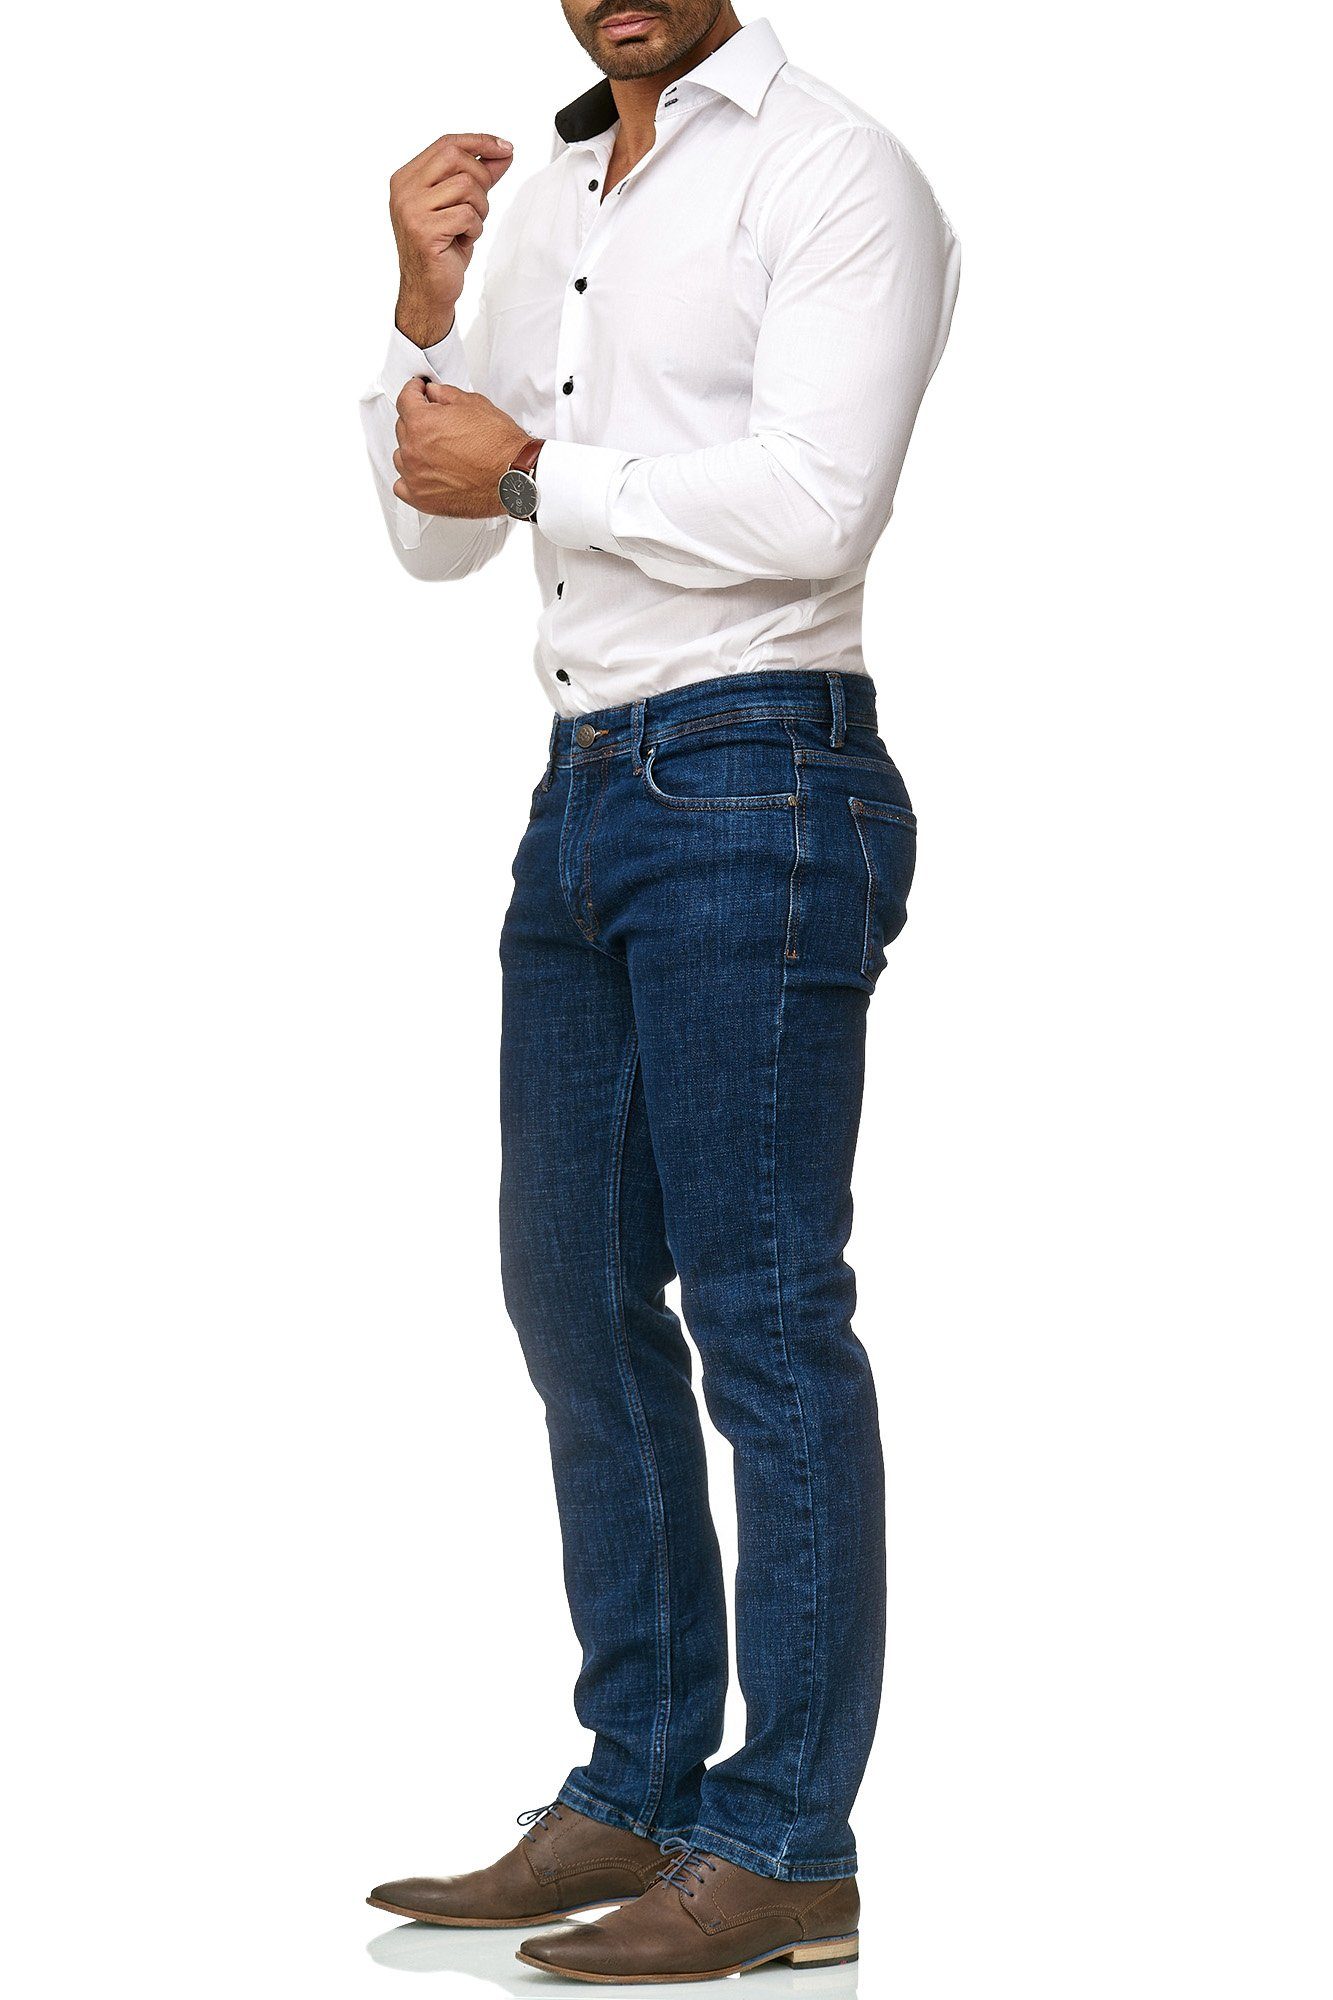 BARBONS Herren 5-Pocket-Jeans Fit Design Regular 5-Pocket 00-Blau